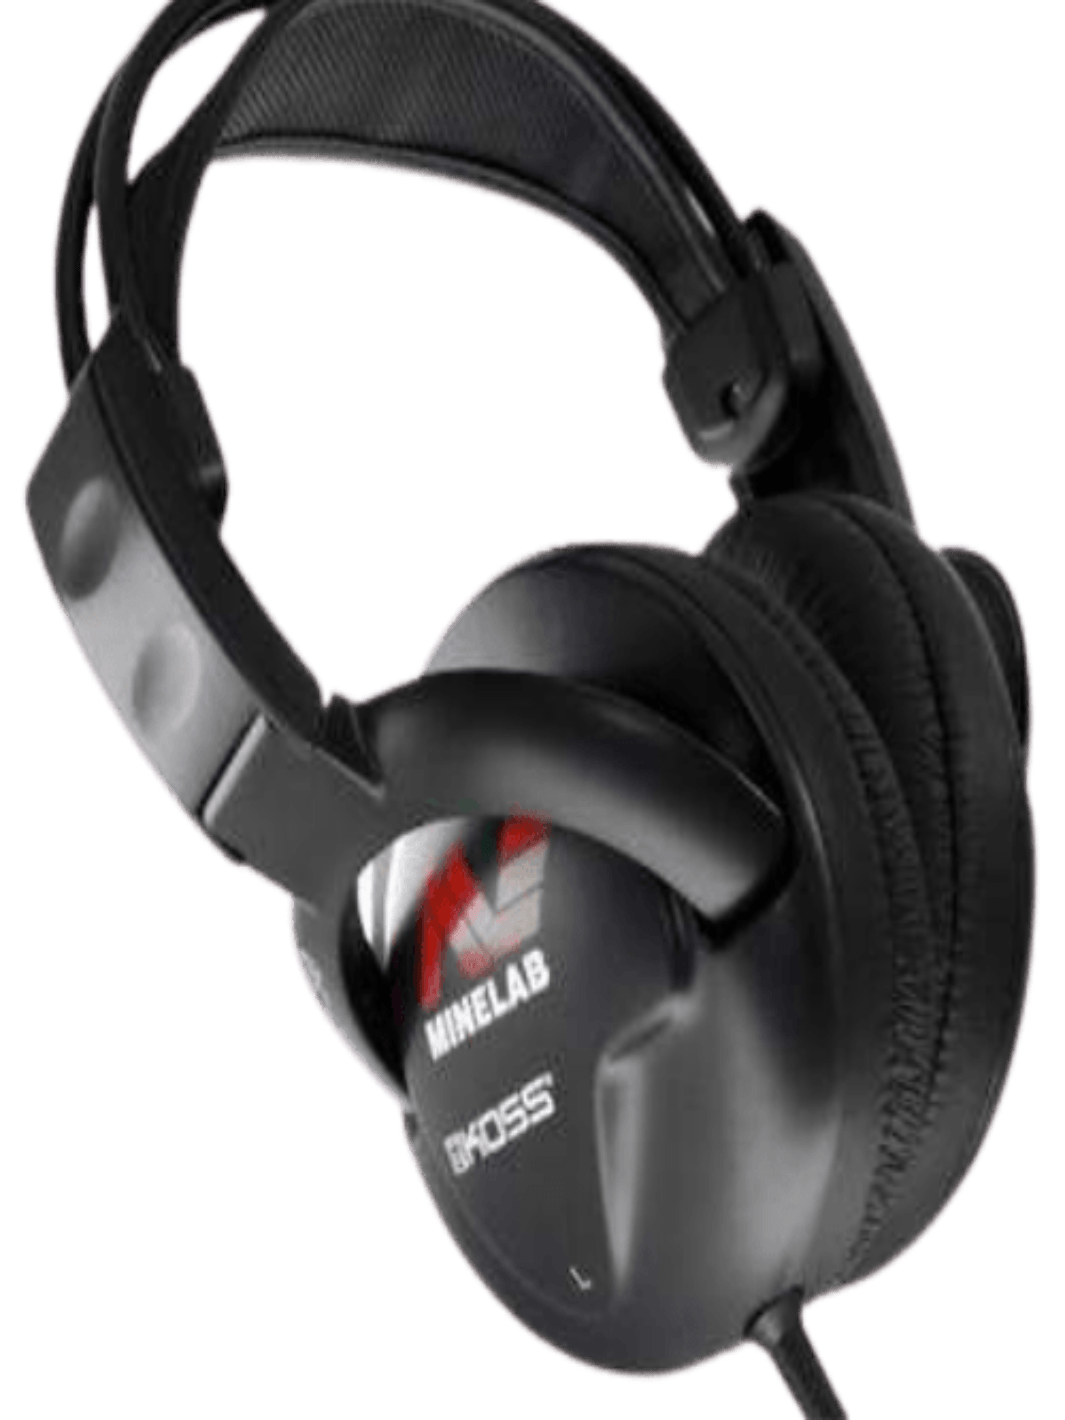 Minelab SDC 2300 High Quality Koss UR-30 Headphones, Not Waterproof - Treasure Coast Metal Detectors